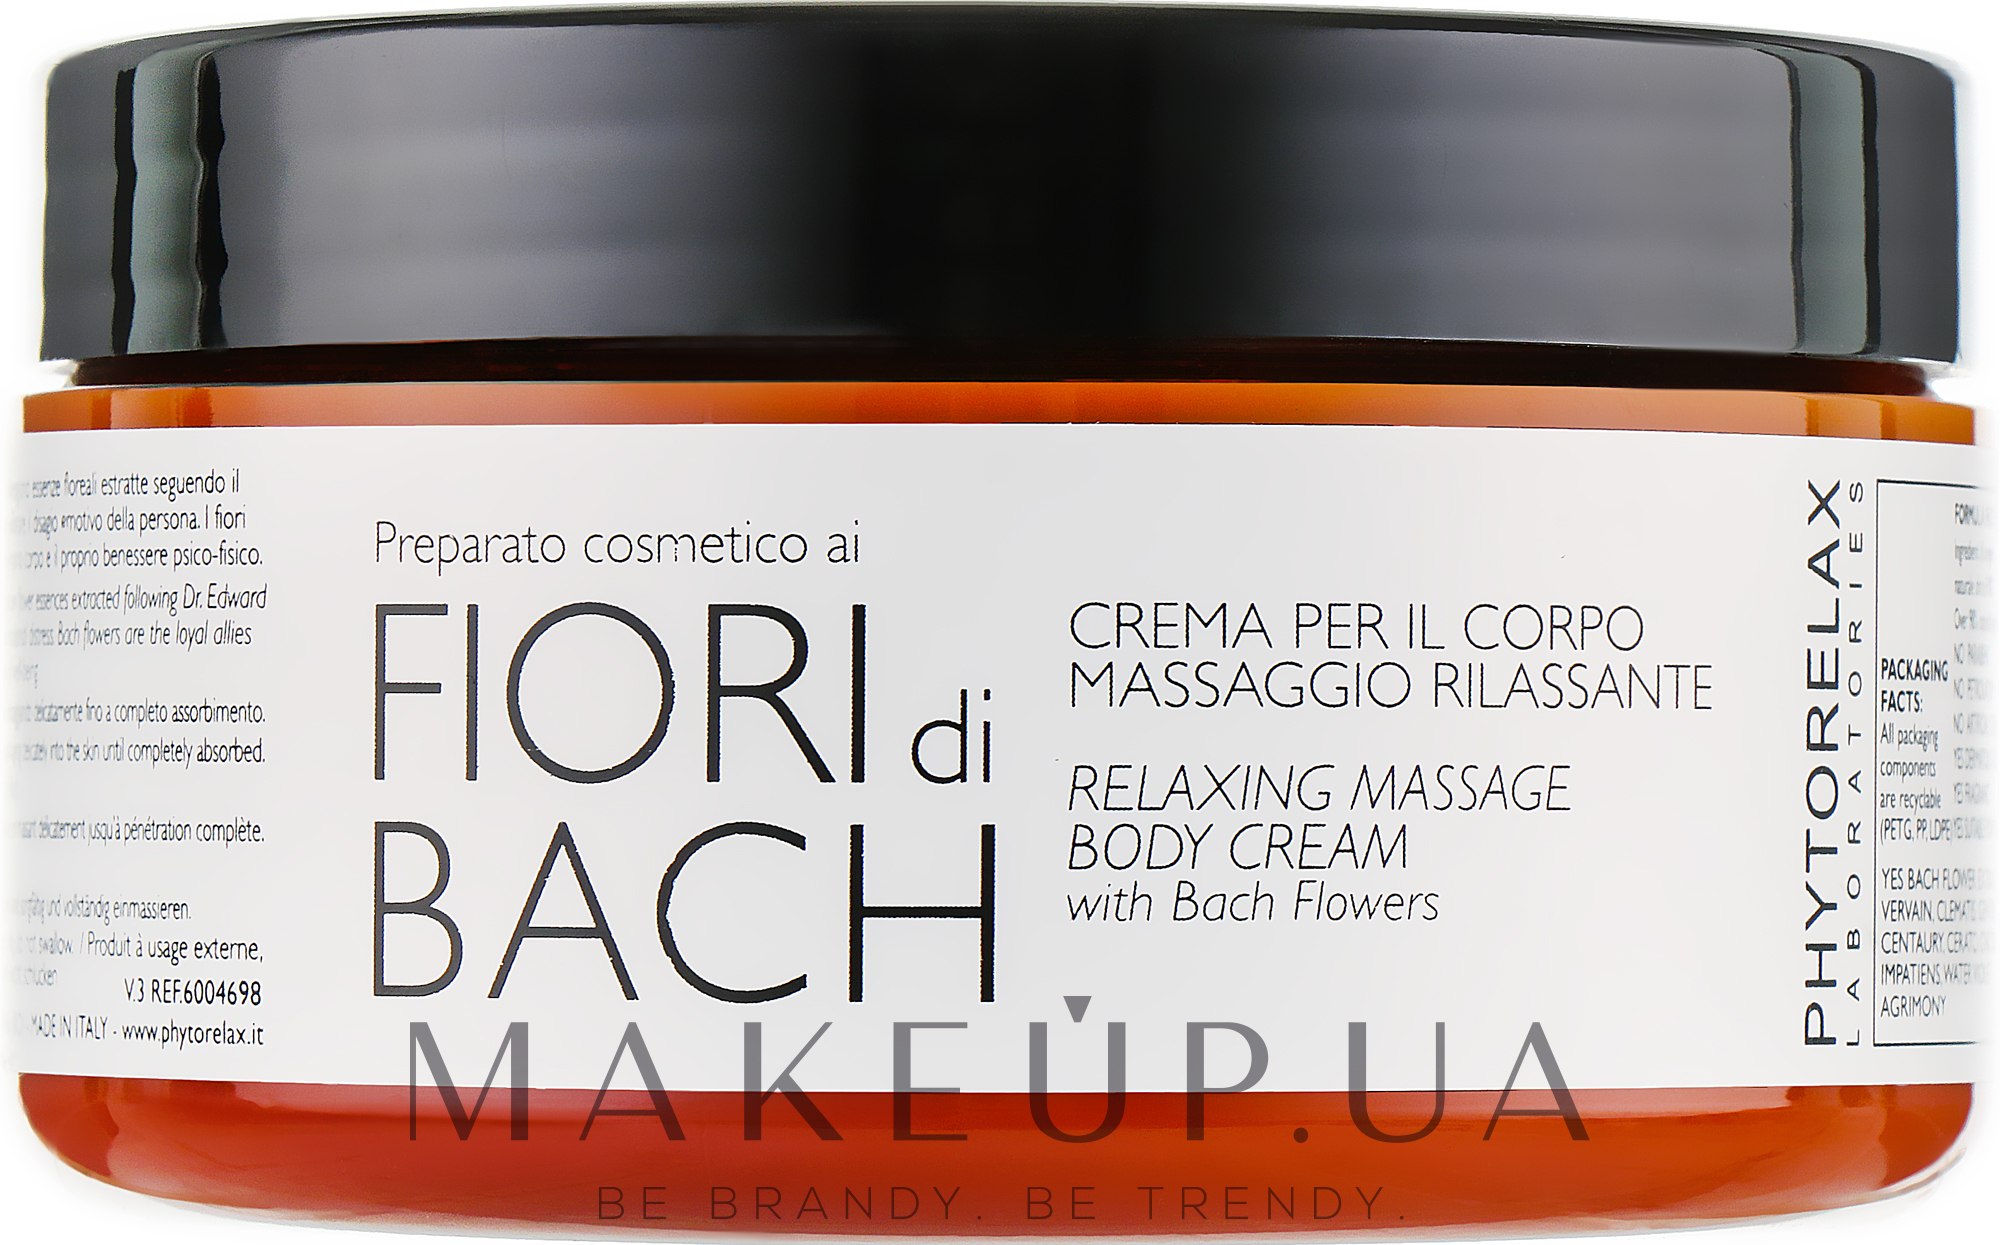 Phytorelax Laboratories Fiori Di Bach Relaxing Massage Body Cream -  Массажный крем Bach Flowers: купить по лучшей цене в Украине